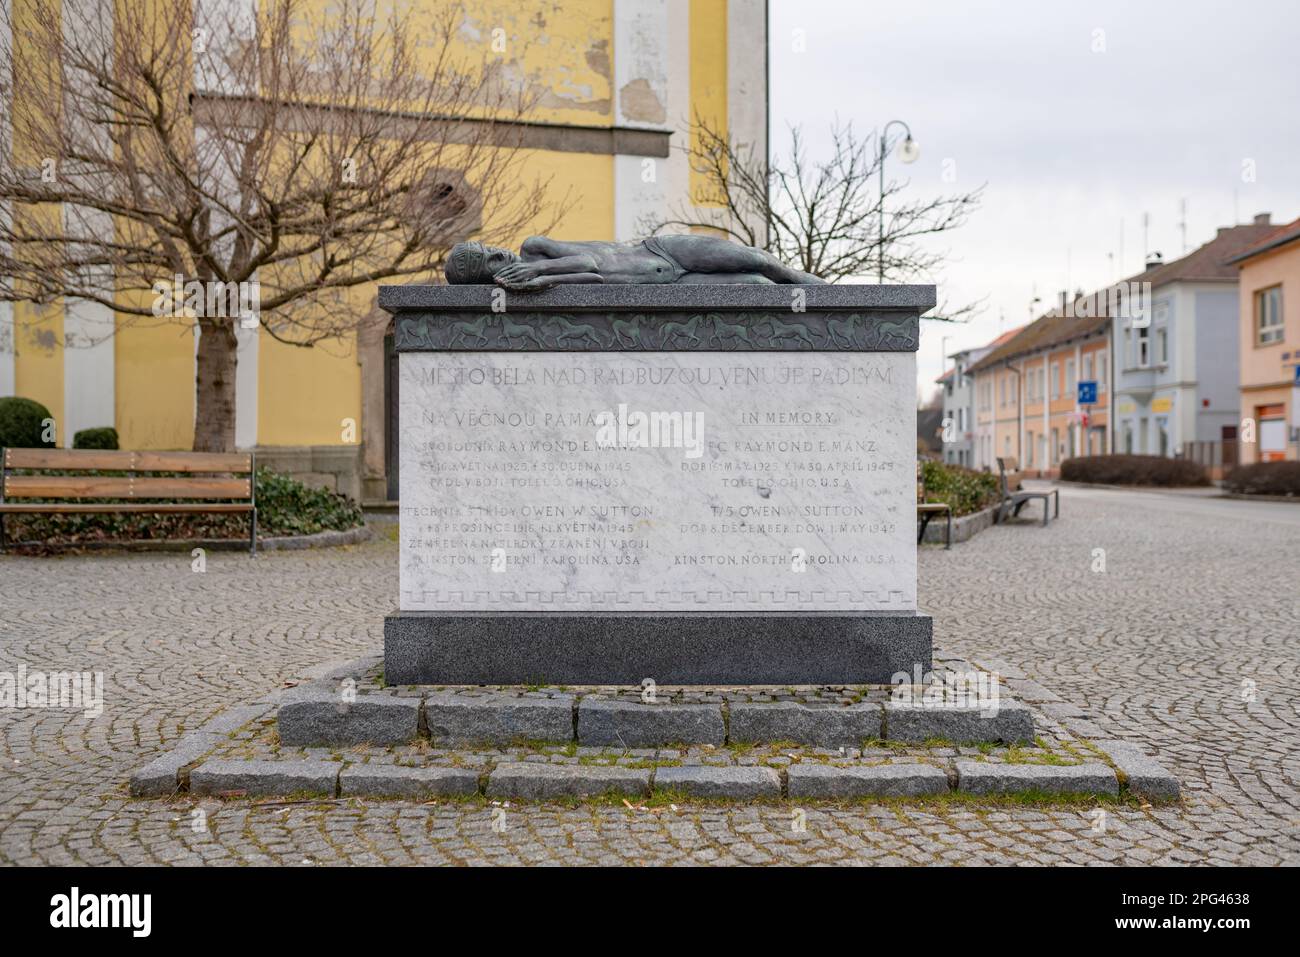 Denkmal für zwei gefallene amerikanische Soldaten aus dem 42. Aufklärungsgeschwader, getötet während der Befreiung der Tschechoslowakei, in Bela nad Radbuzou. Stockfoto